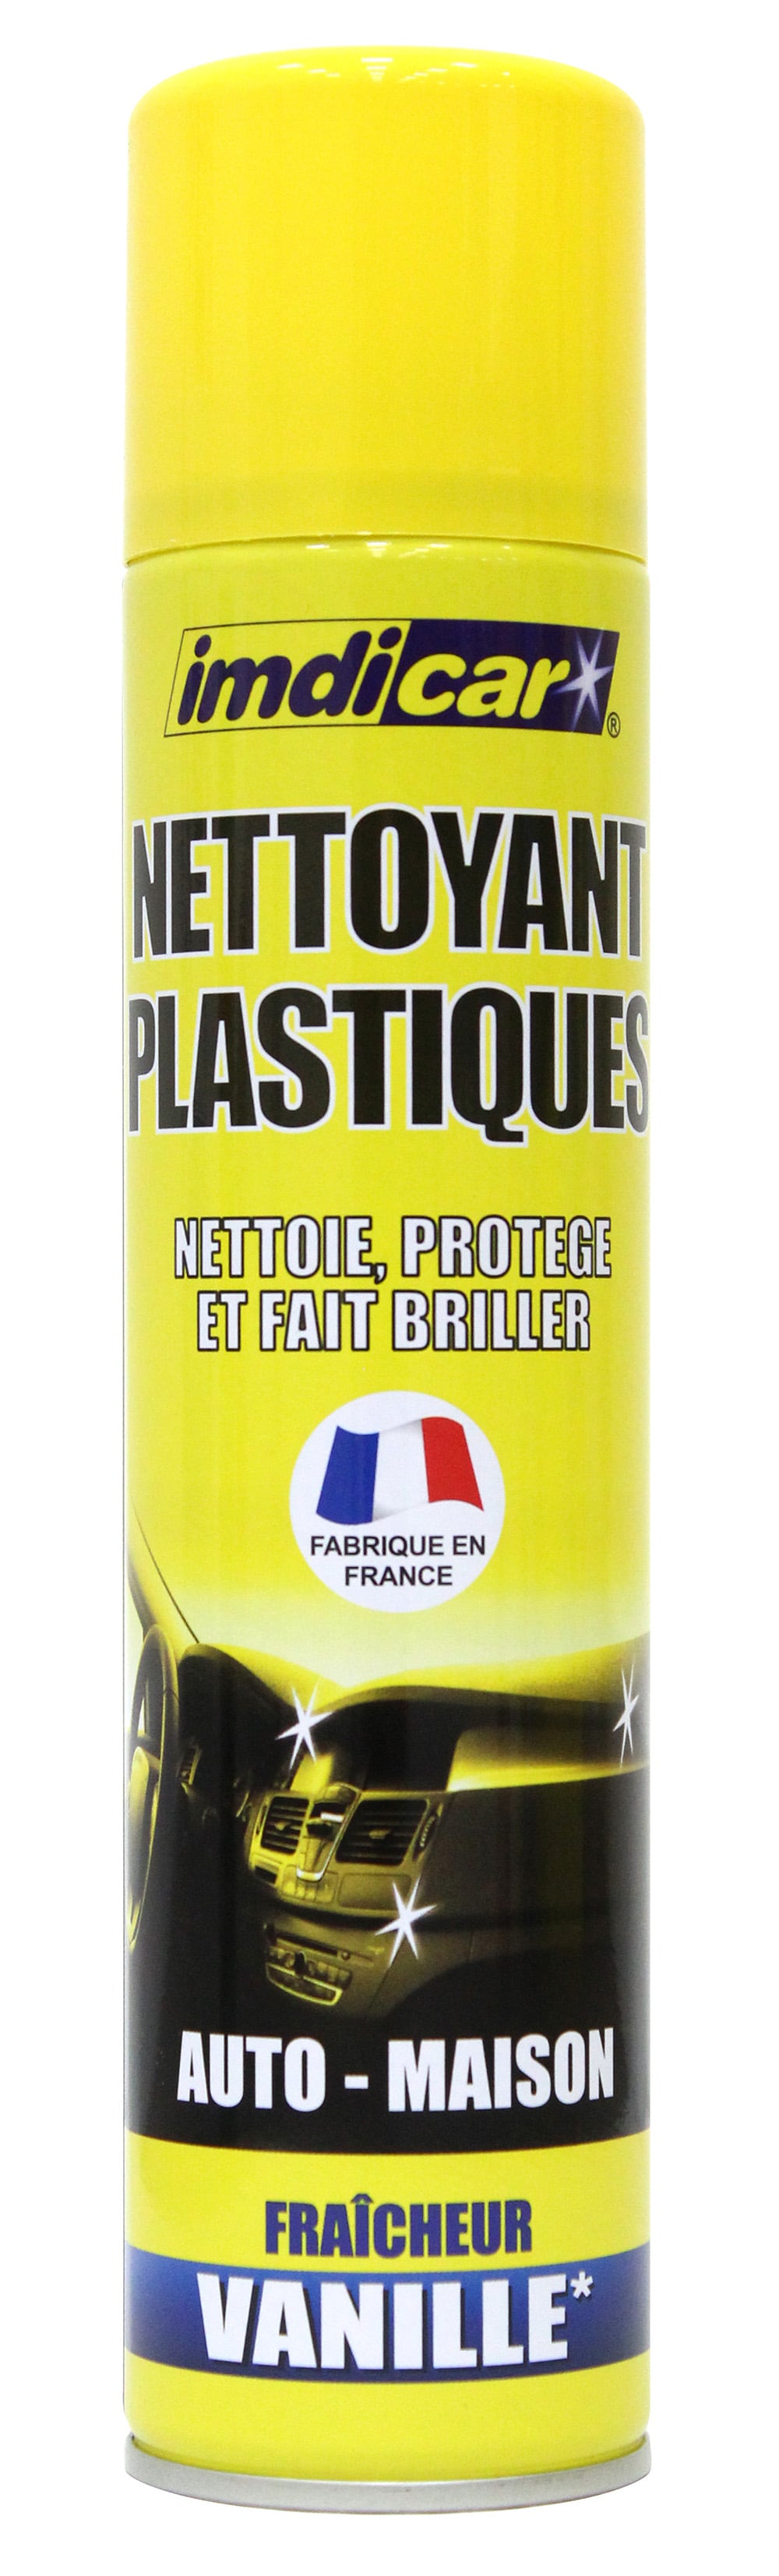 Accessoire Nettoyant plastique vanille 300 ml